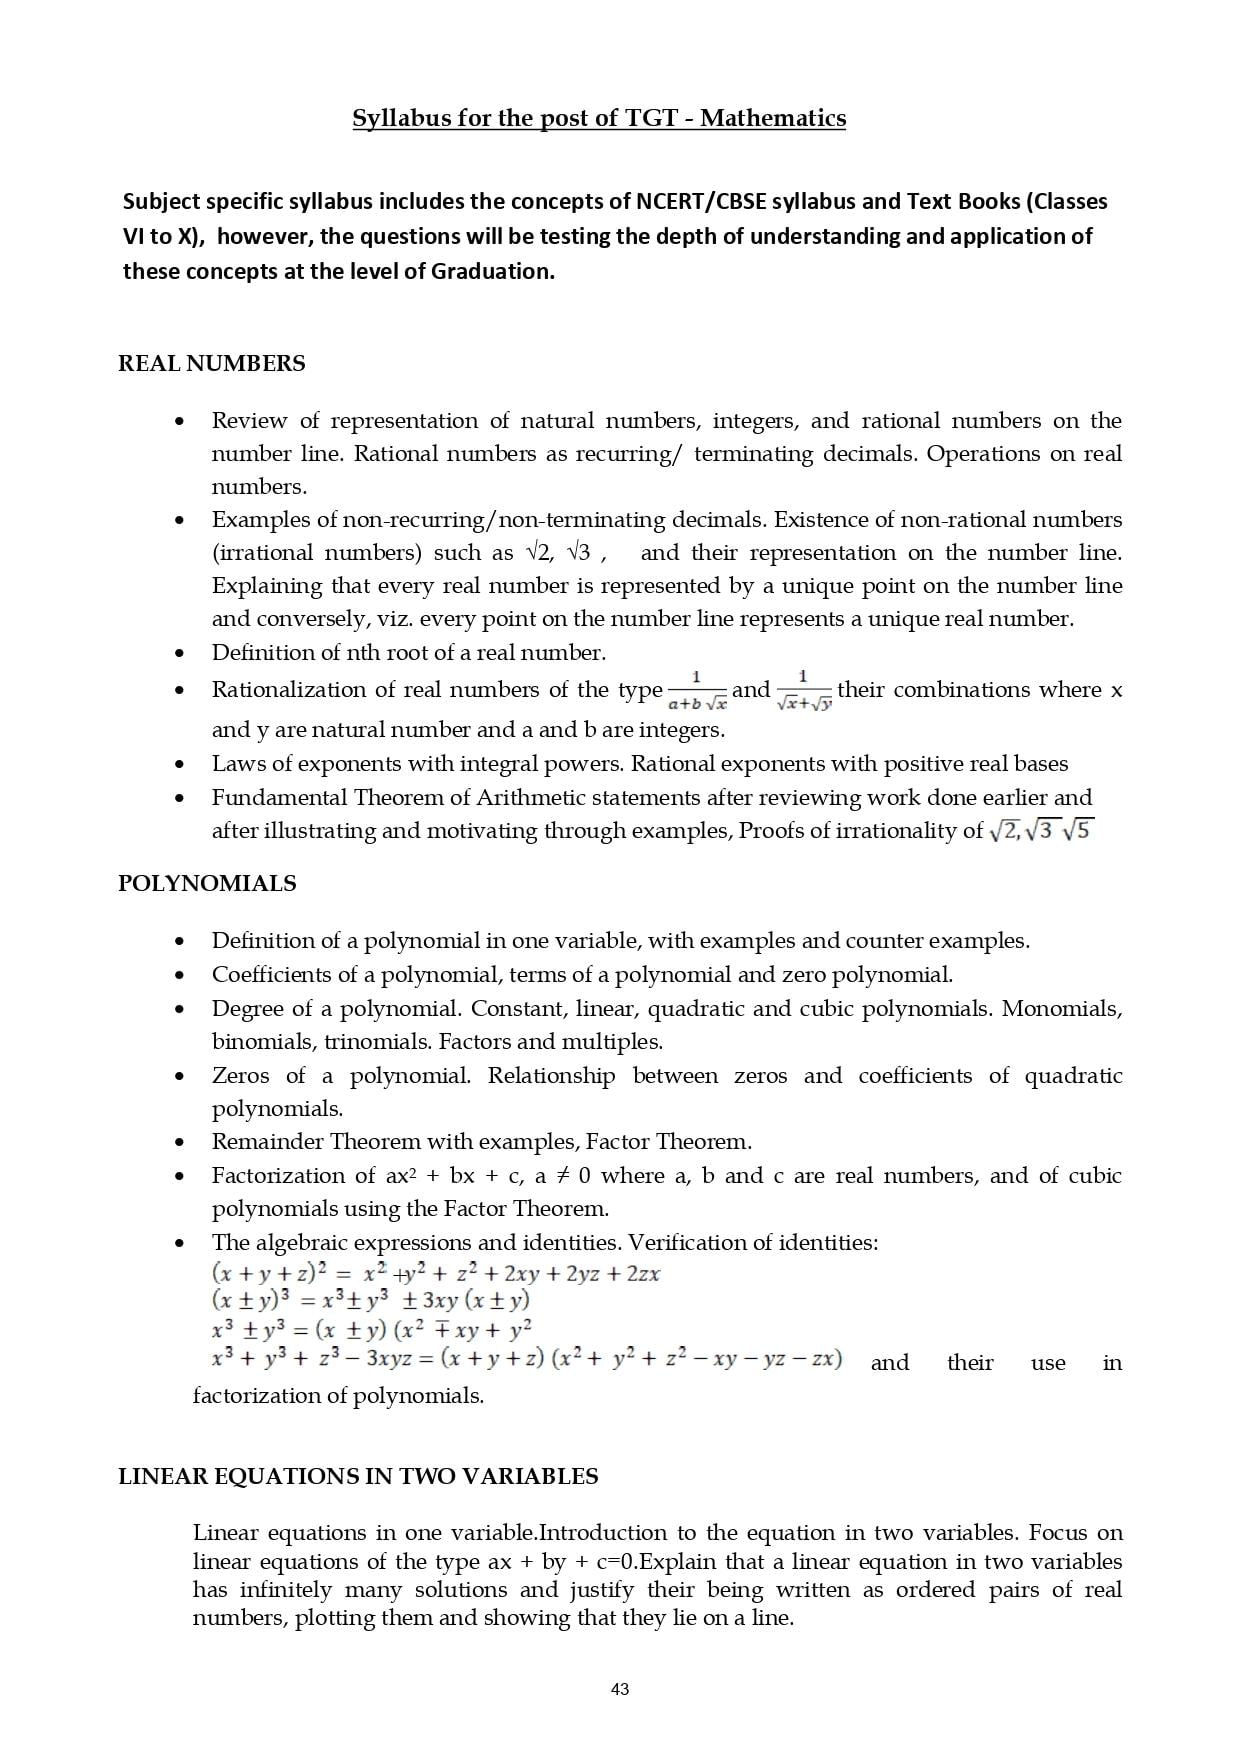 Kvs tgt mathematics syllabus 2022 pdf download